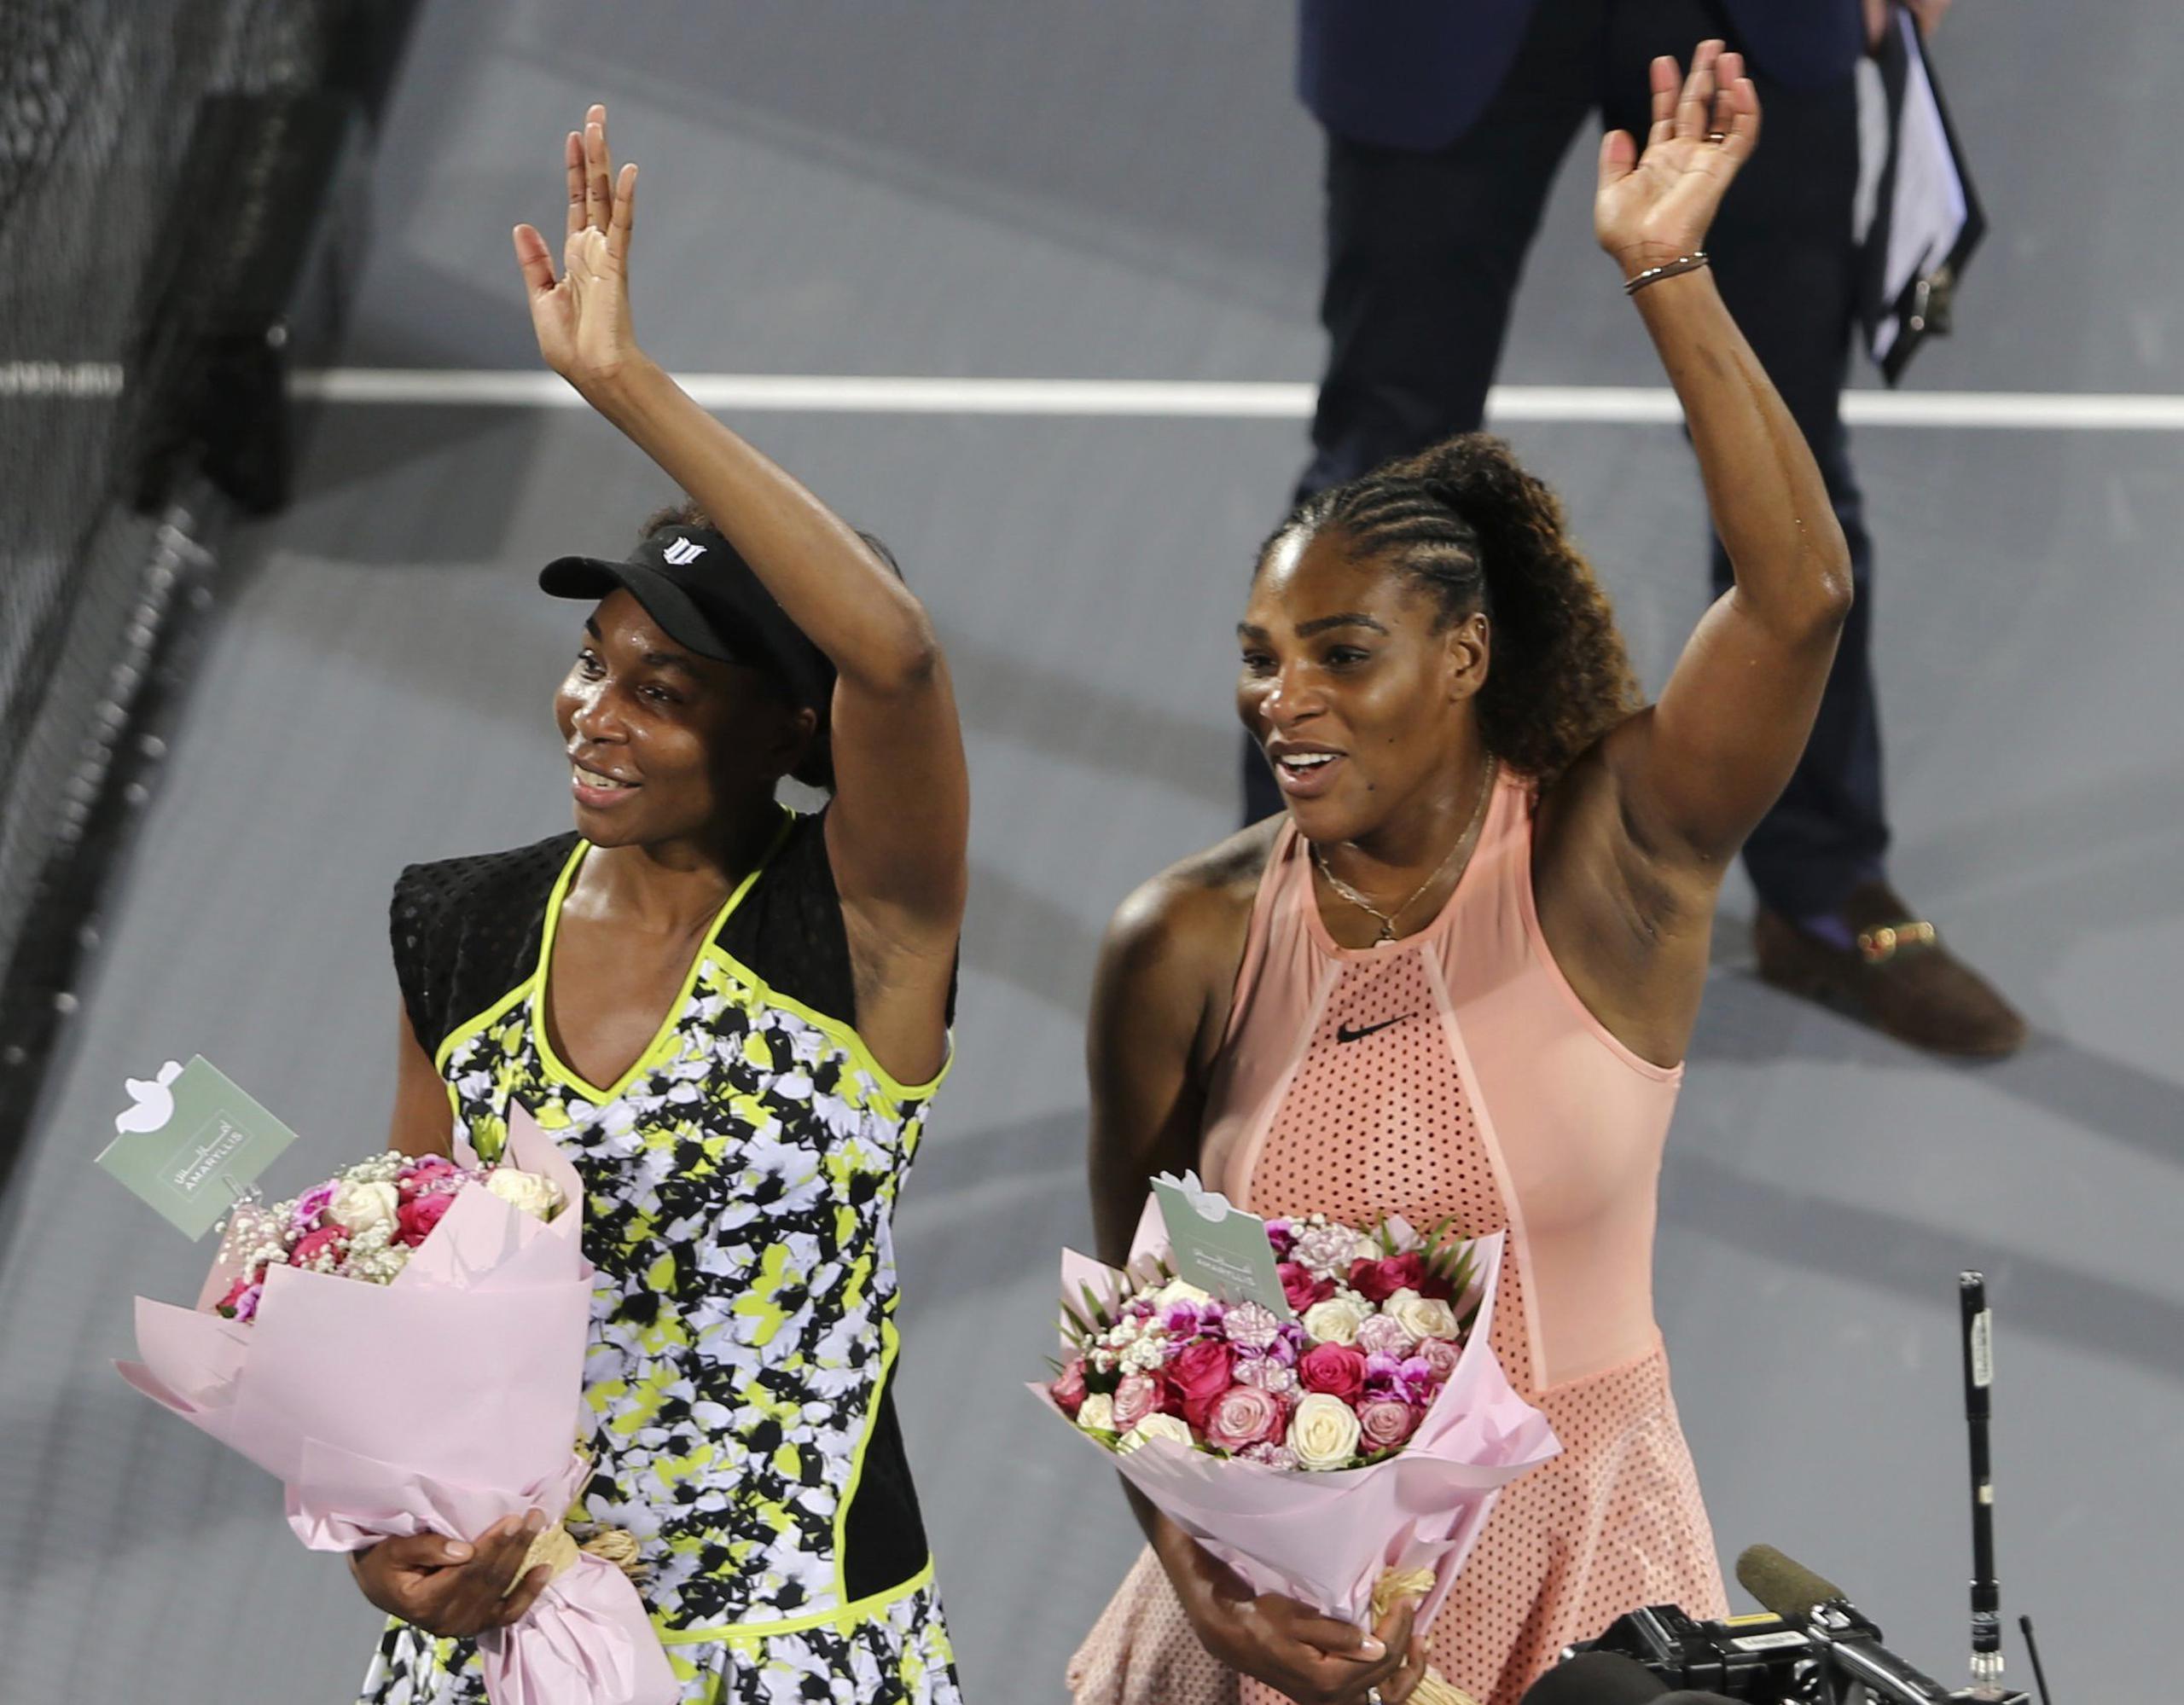 Las hermanas Williams jugará el US Open que inicia este mes. Venus (a la iquierda) recibió un wild card, mientras que Serena dijo que el US Open será el último torneo de su laureada carrera.